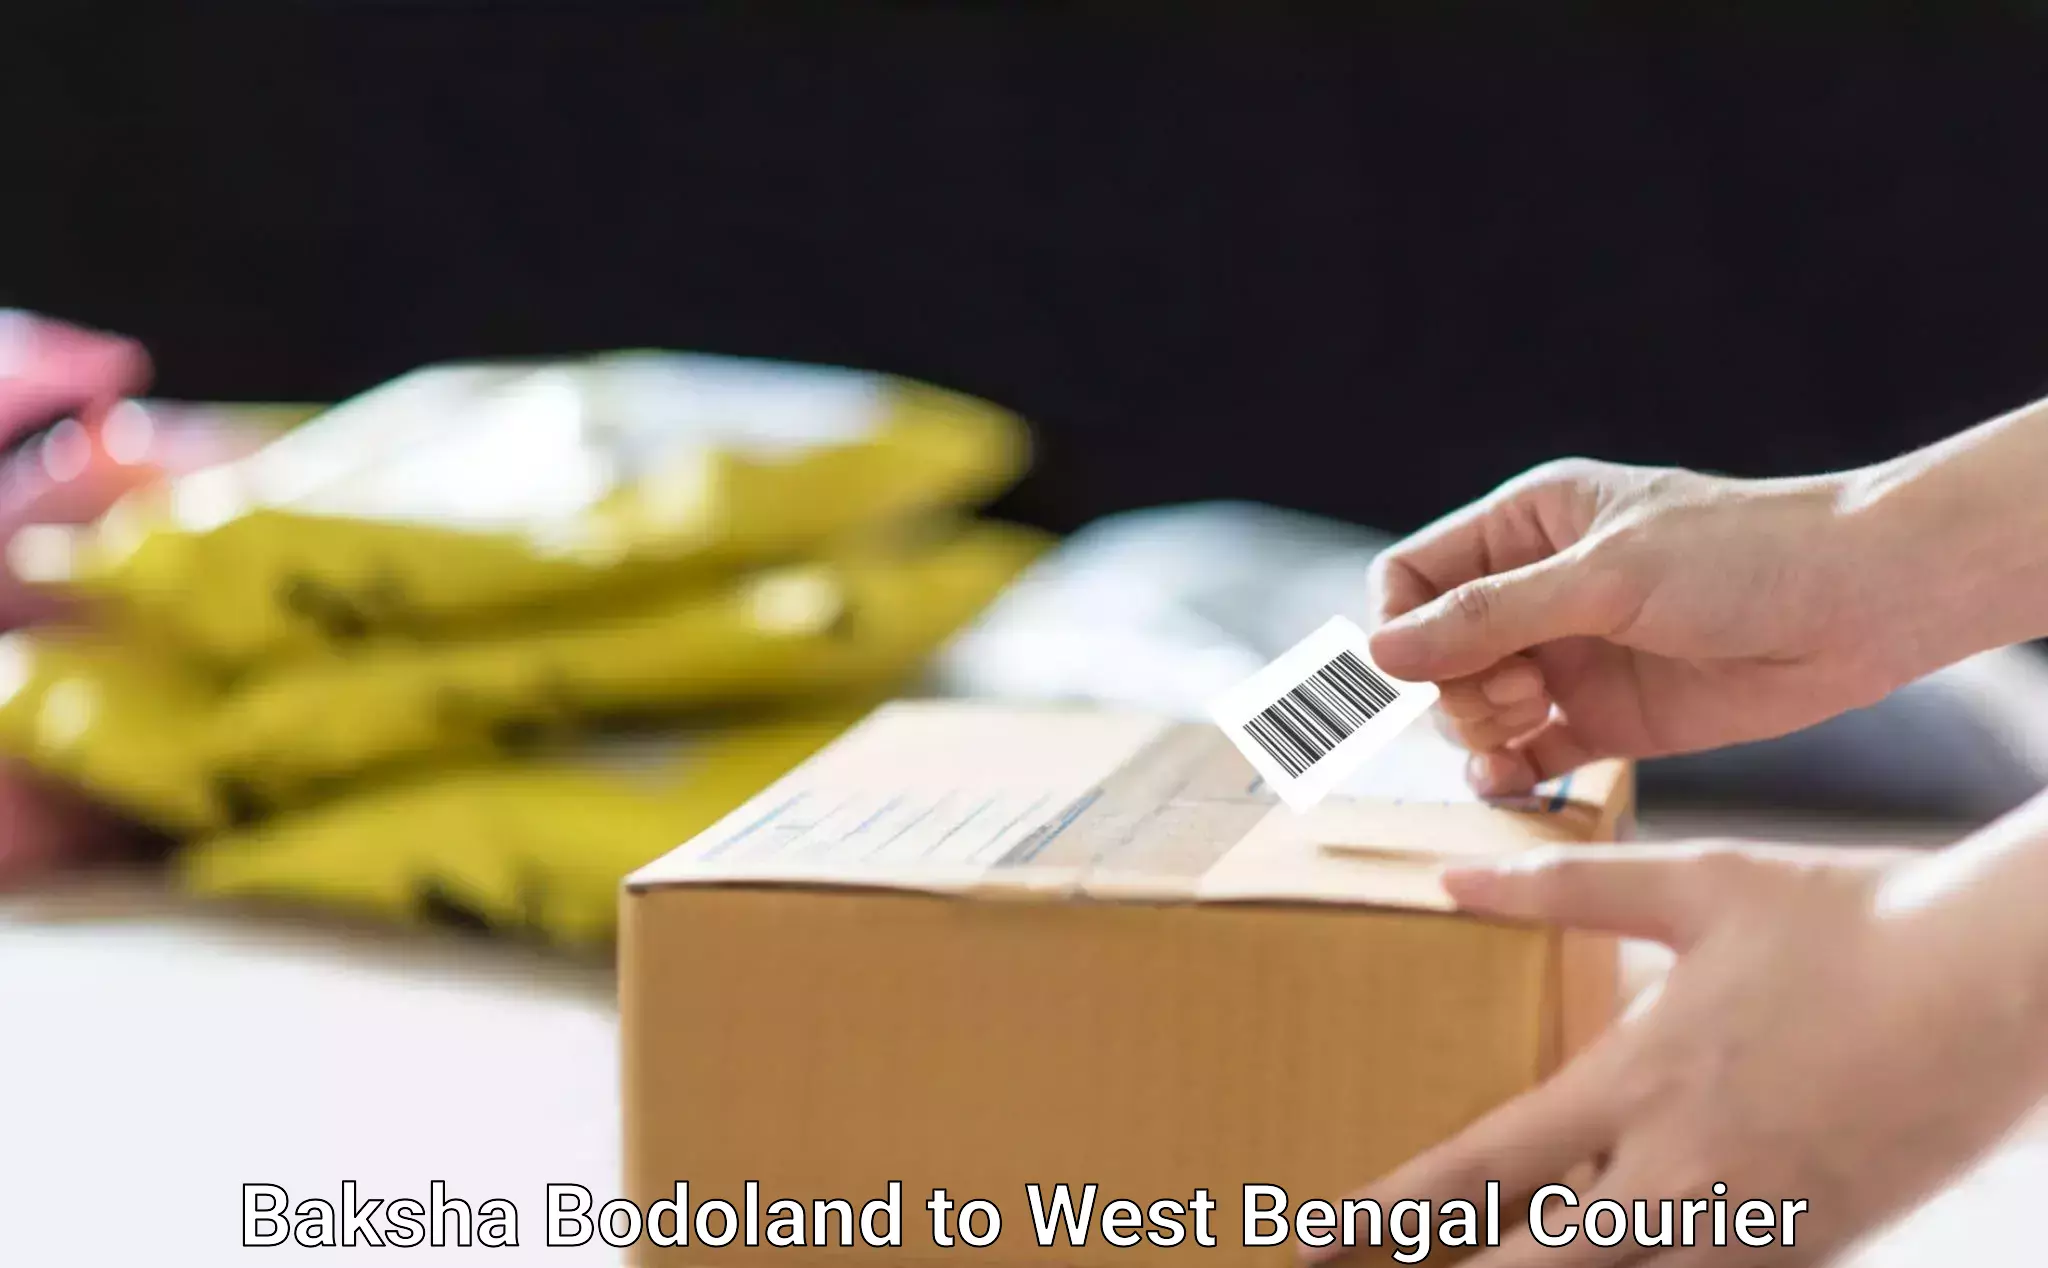 Courier service comparison in Baksha Bodoland to West Bengal